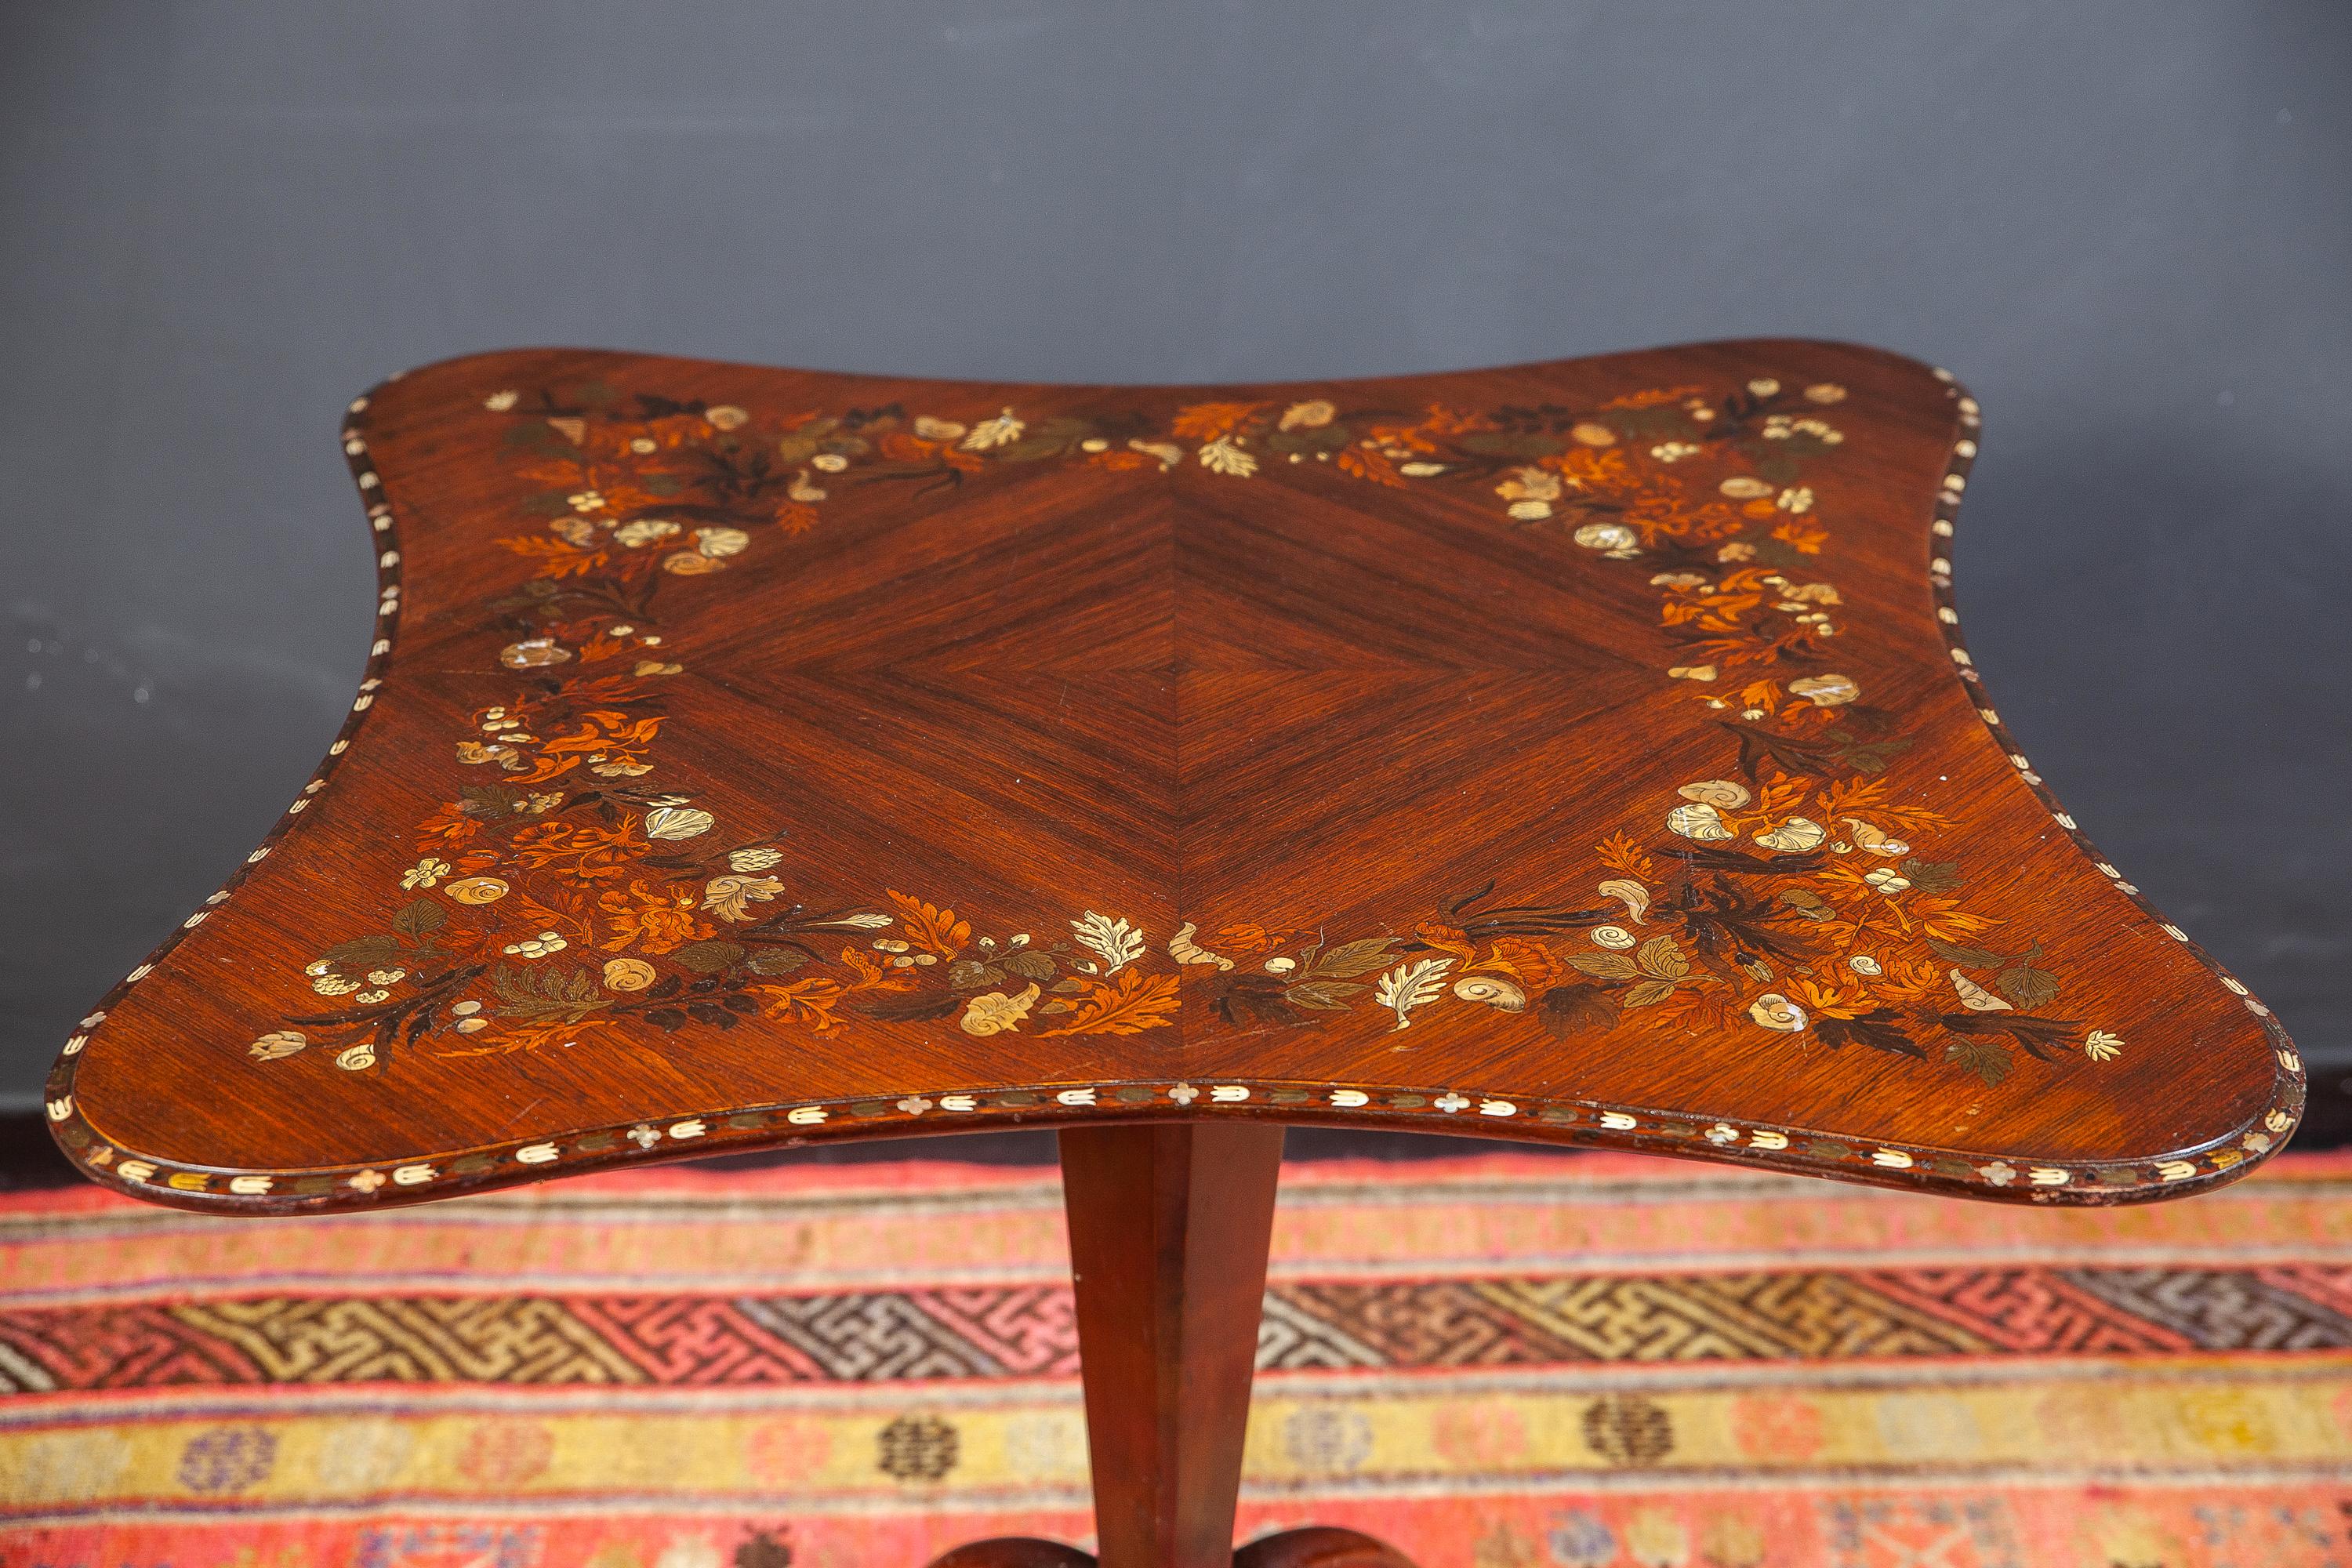 Eleganter englischer Regency-Mitteltisch mit Intarsien oder Beistelltisch mit Mahagoni-Dreibeinfuß.
Die Tischplatte mit hochwertiger Intarsienarbeit aus verschiedenen ausgewählten Edelhölzern und 